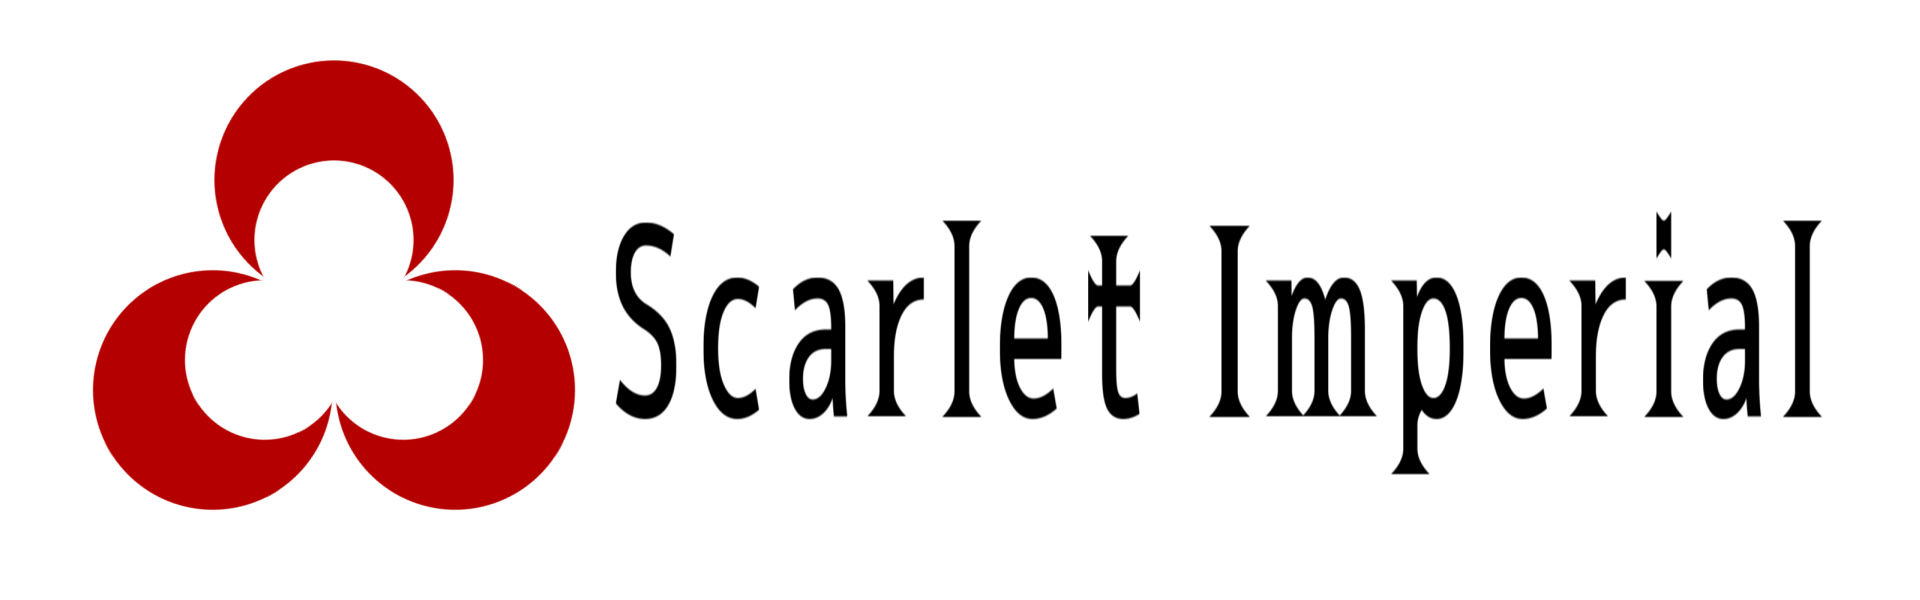 ScRスカーレットインペリアルホテルズ新ロゴ